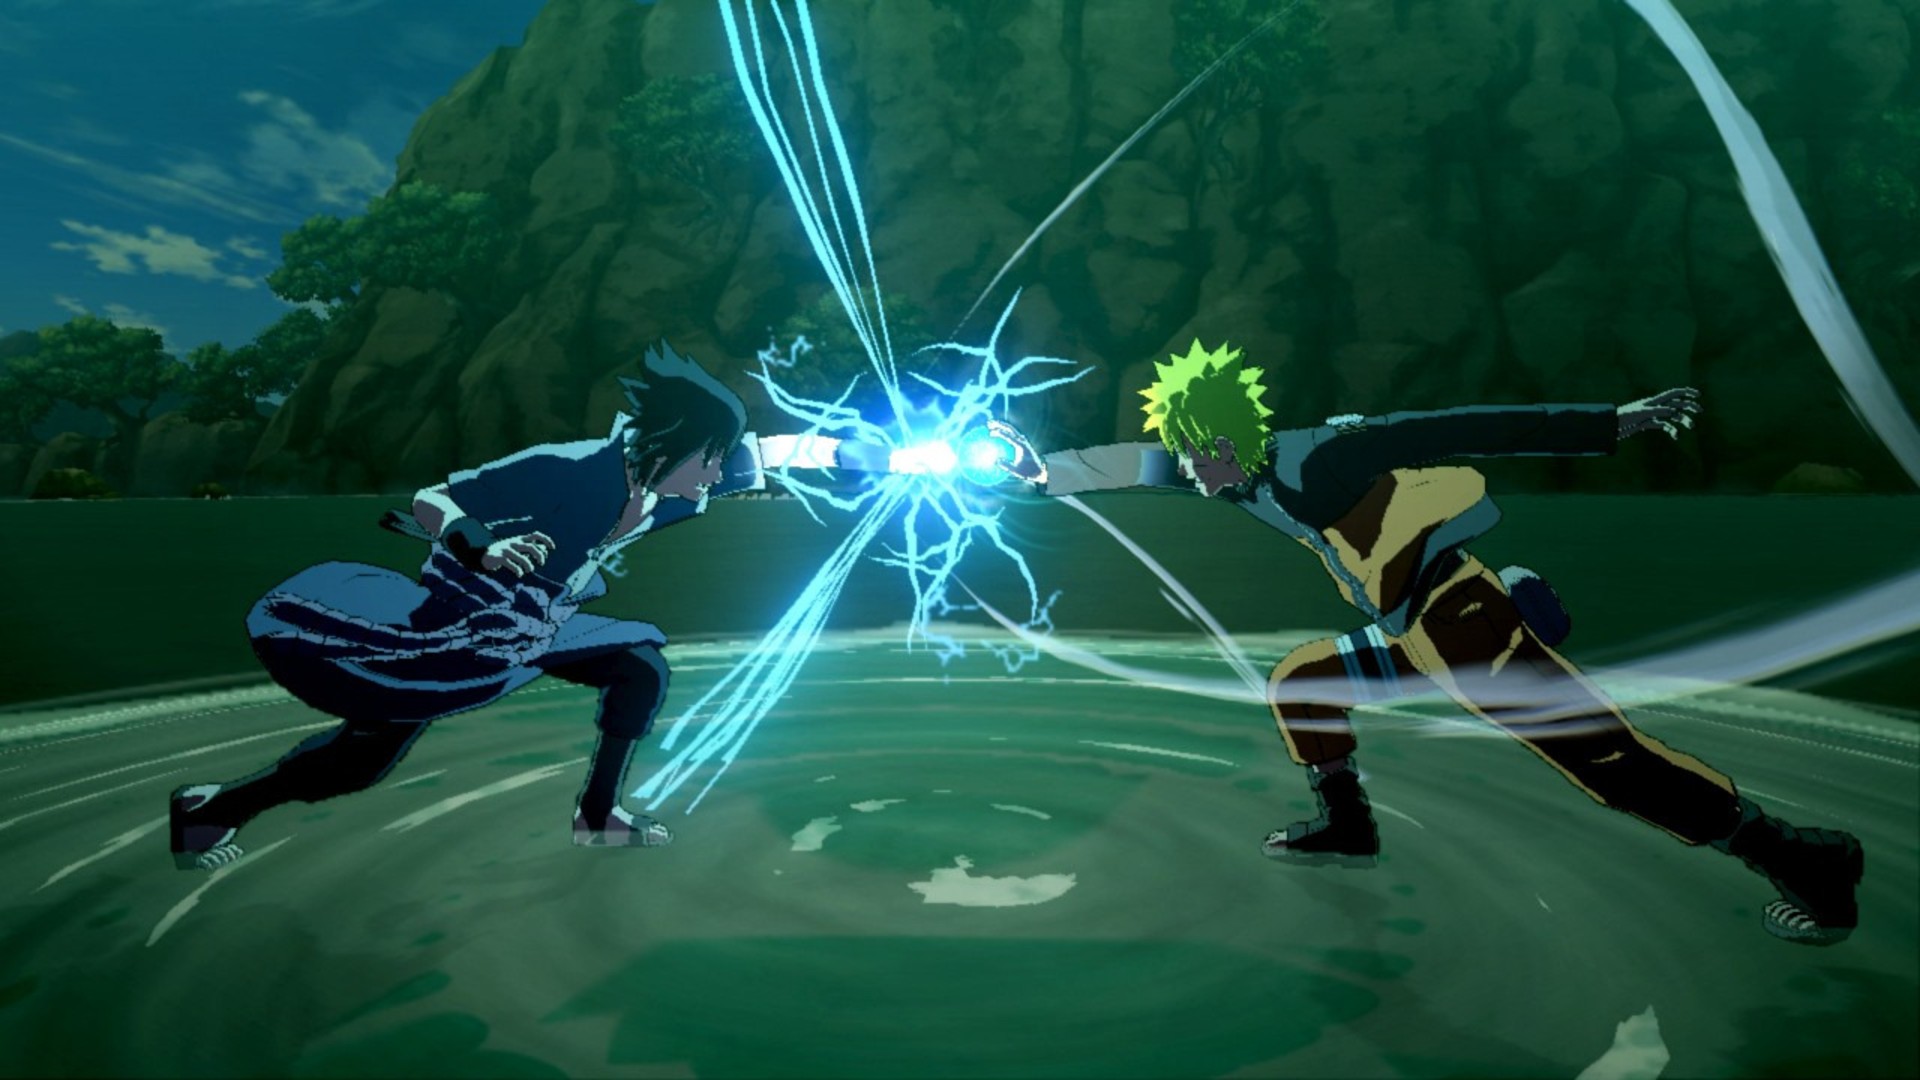 Най -добри аниме игри: Naruto Shippuden: Ultimate Ninja Storm 3 Full Burst. Изображението показва два изтребители, чиито юмруци са се сблъскали и генерират електричество